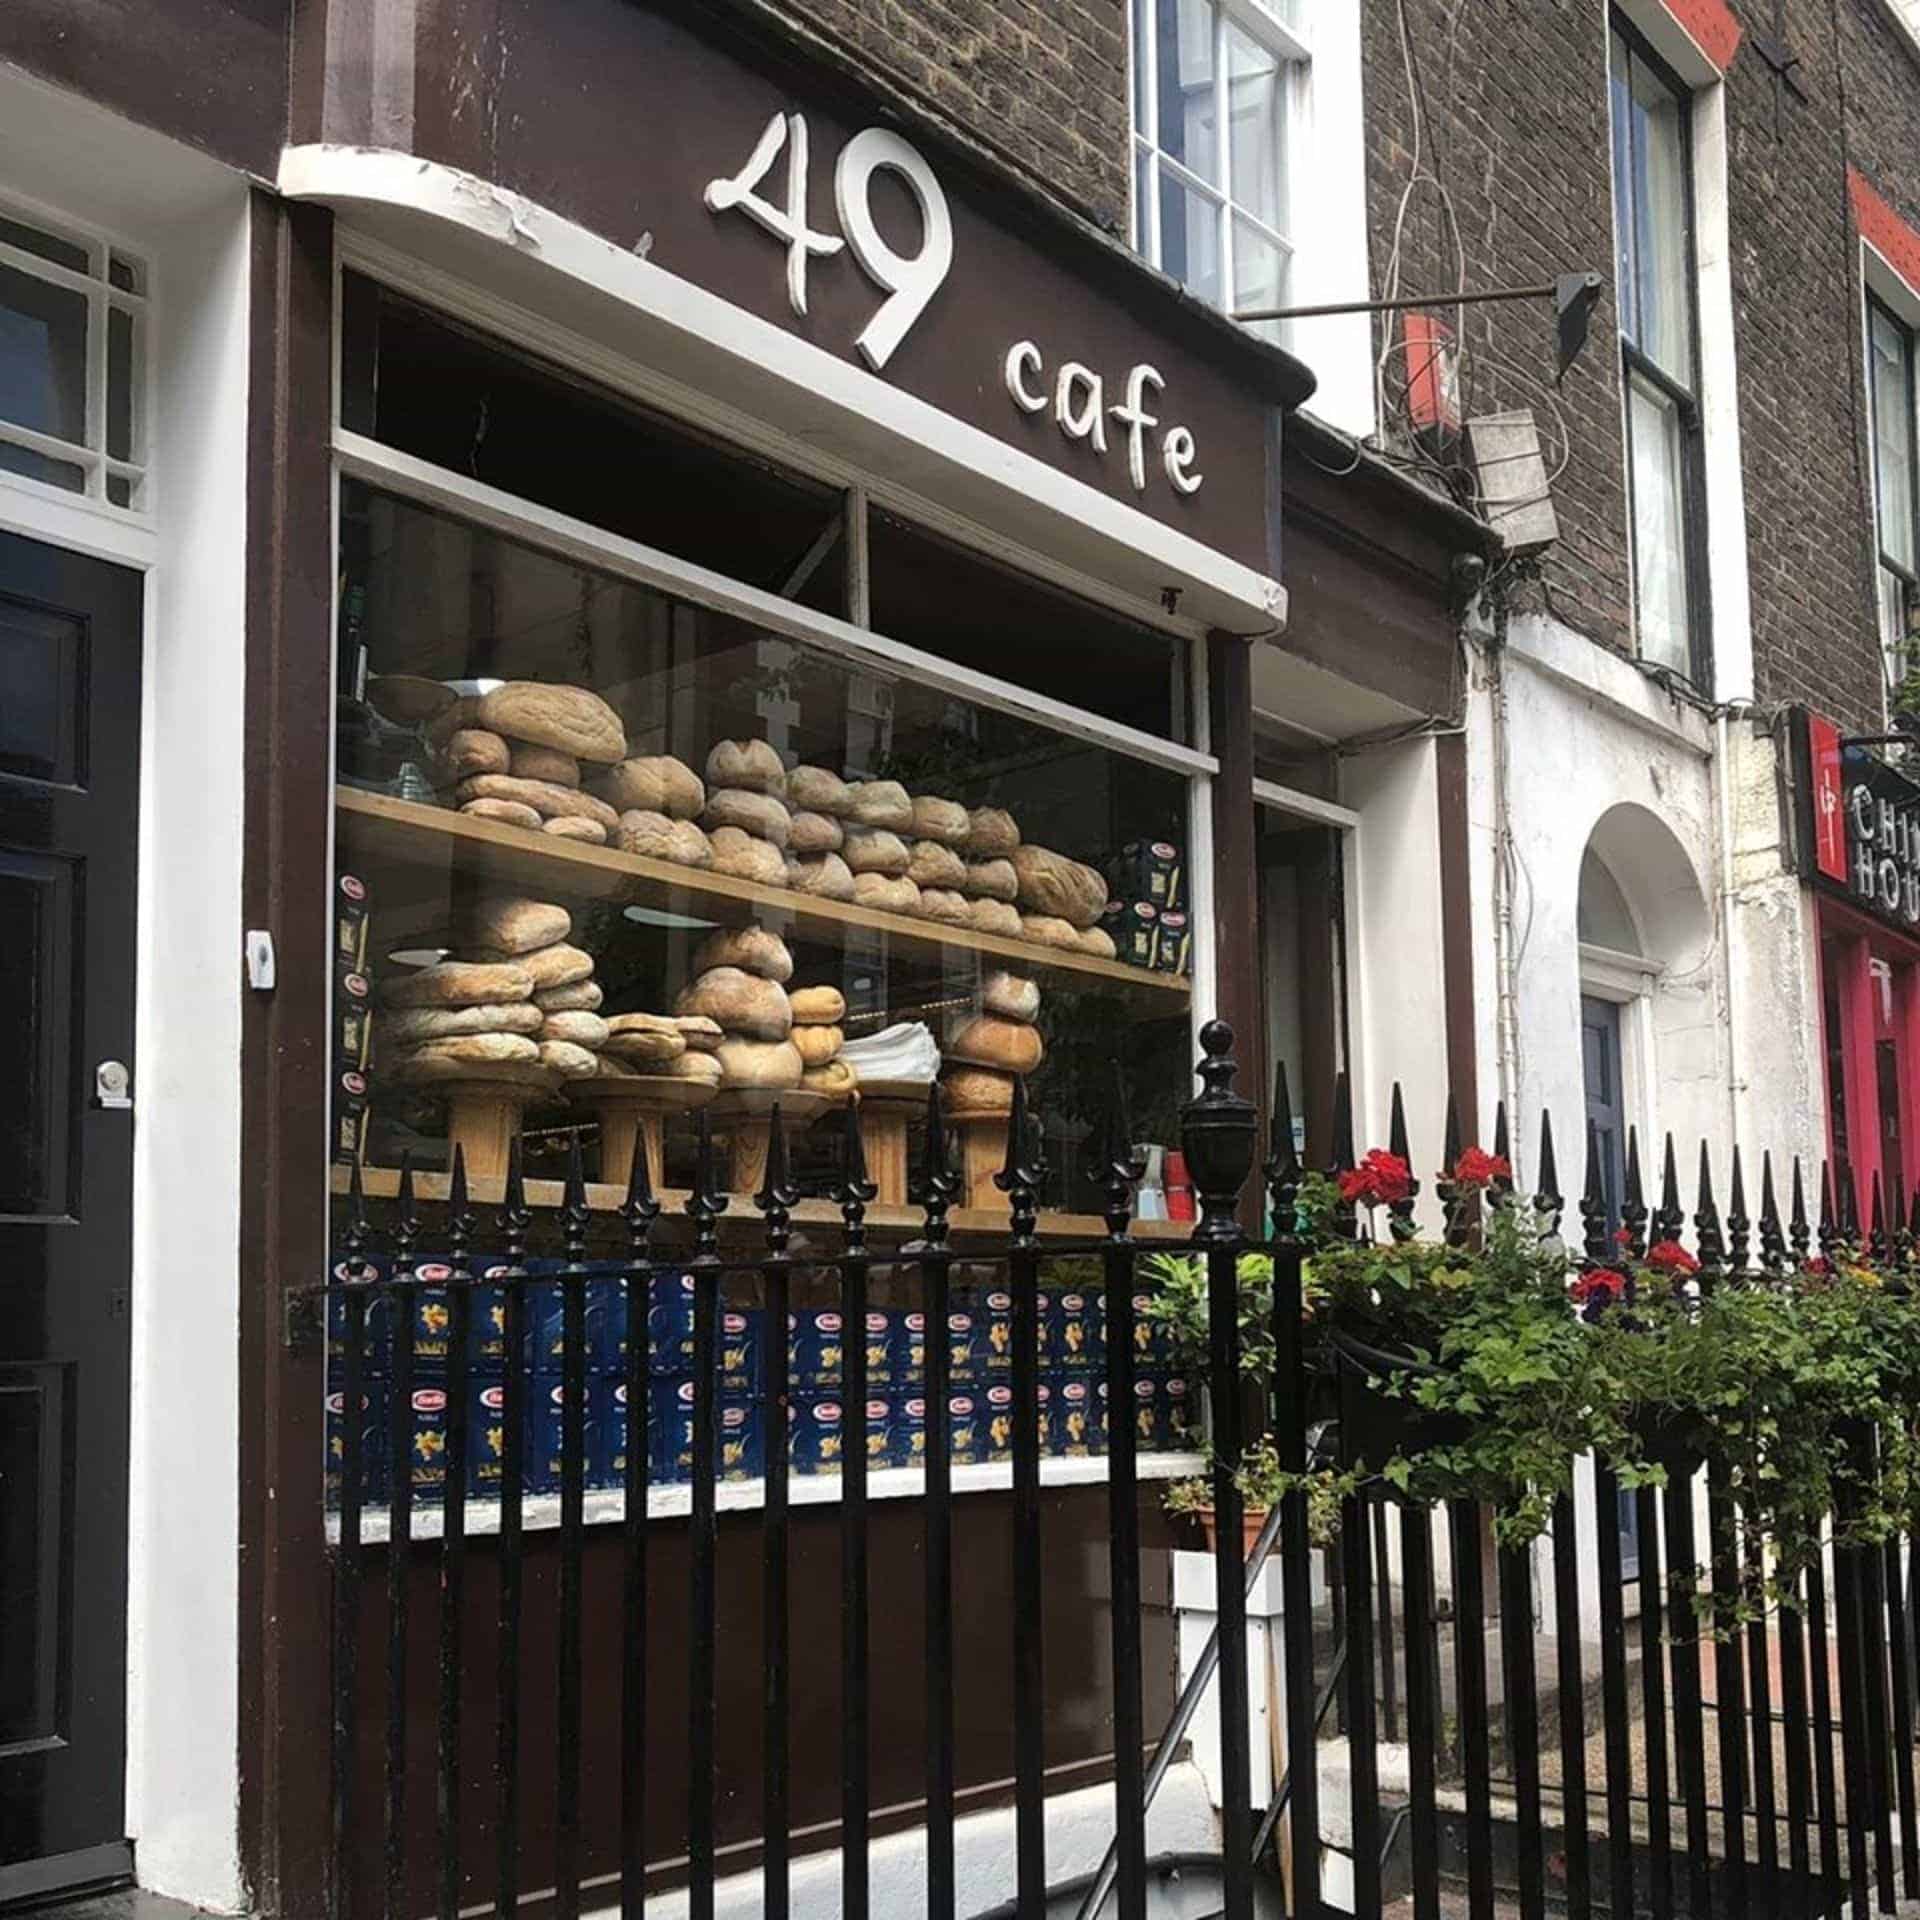 49 Cafe in UK